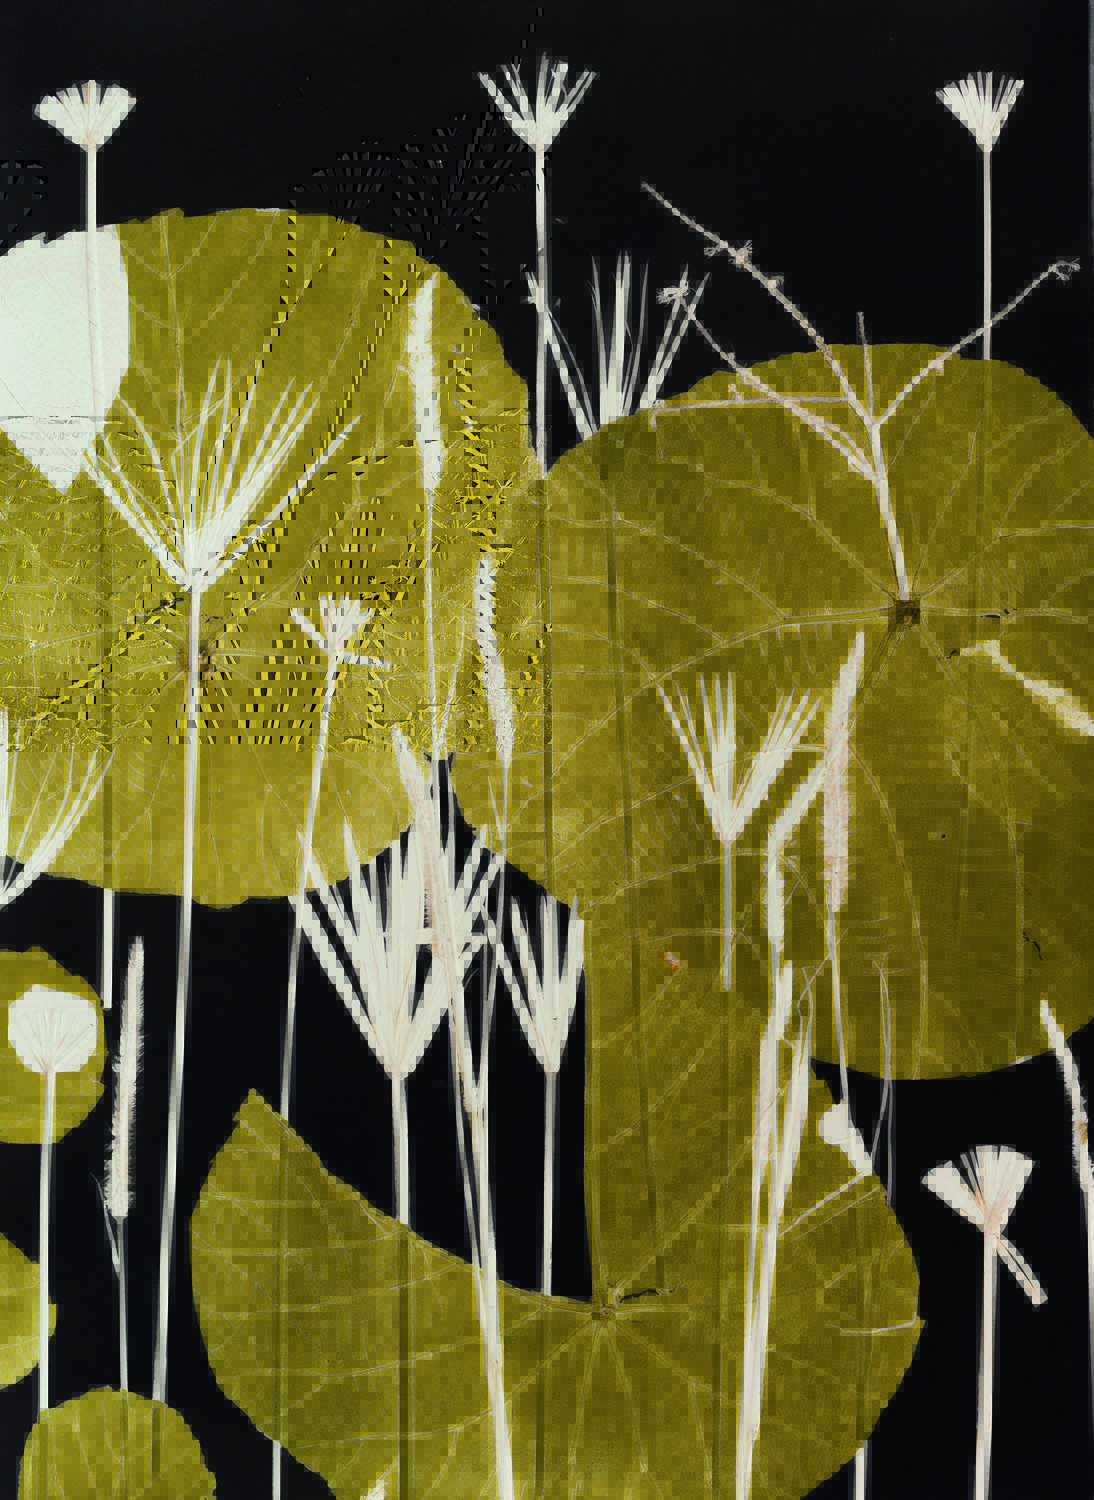 Imagem mostra pintura mostrando folhas em dourado, sobre fundo preto e com detalhes em branco.